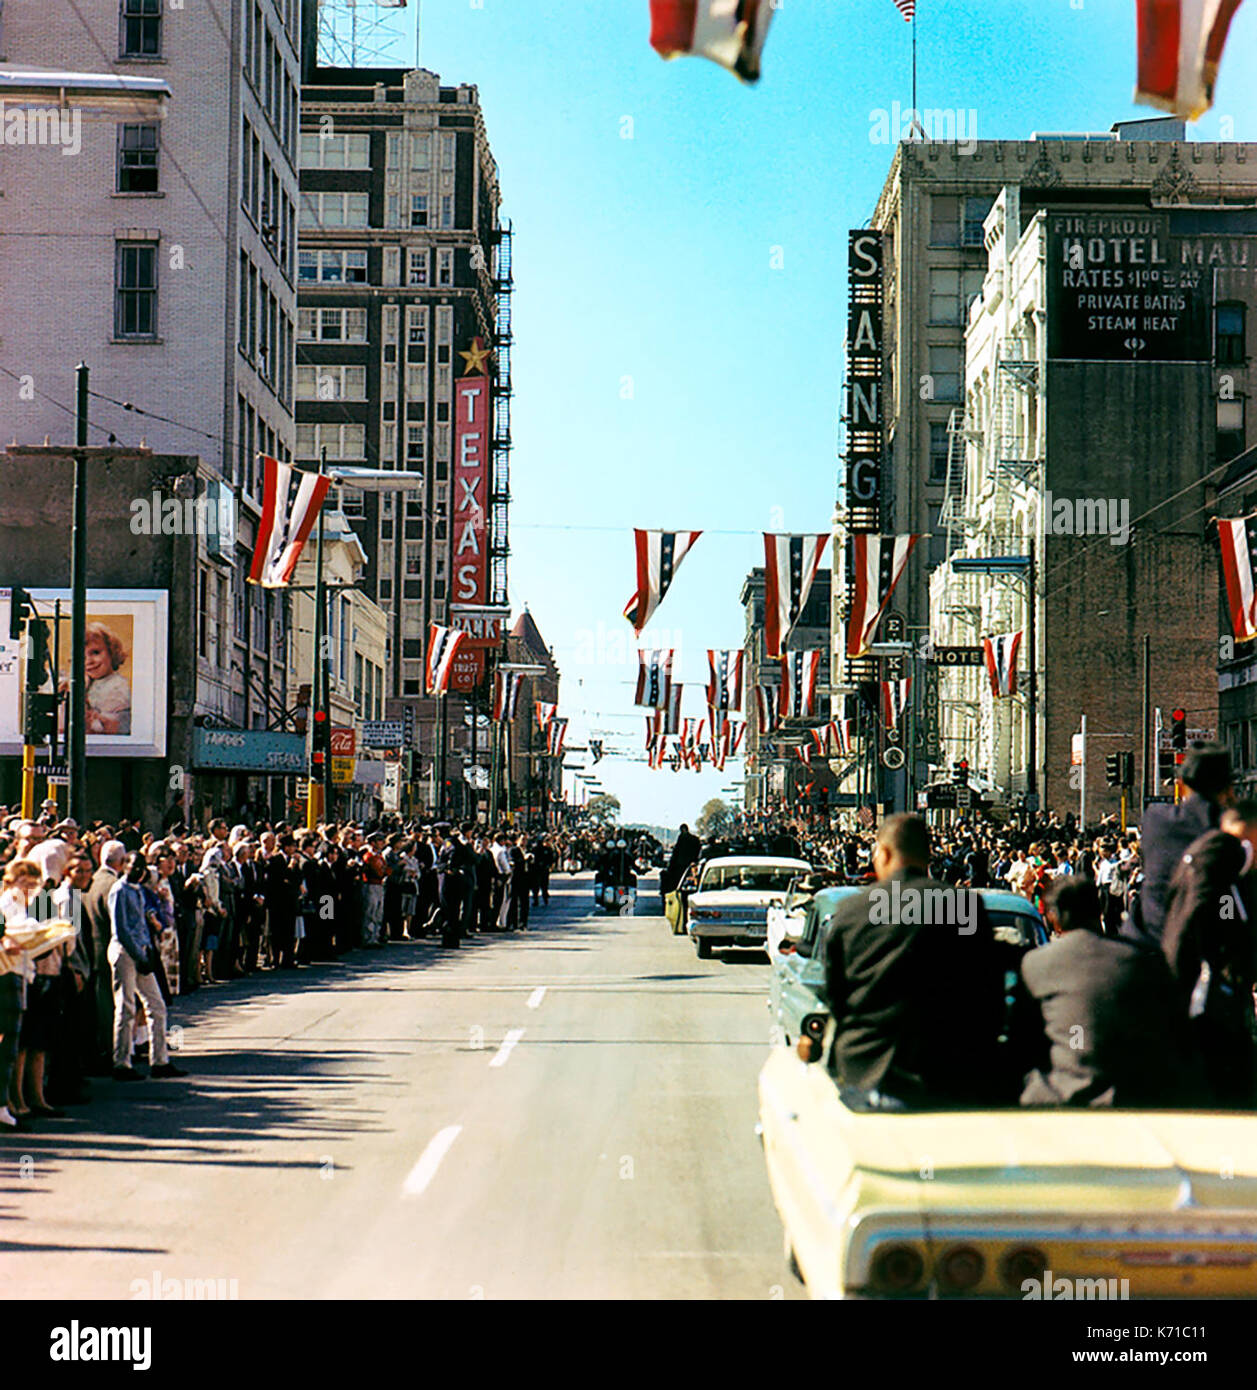 Präsident John F. Kennedy's motorcade Auf der Main Street bei Griffin Street in Dallas, Texas, das am 22. November 1963, kurz bevor der Präsident Kennedy ermordet wurde. Foto von Cecil Stoughton. Stockfoto